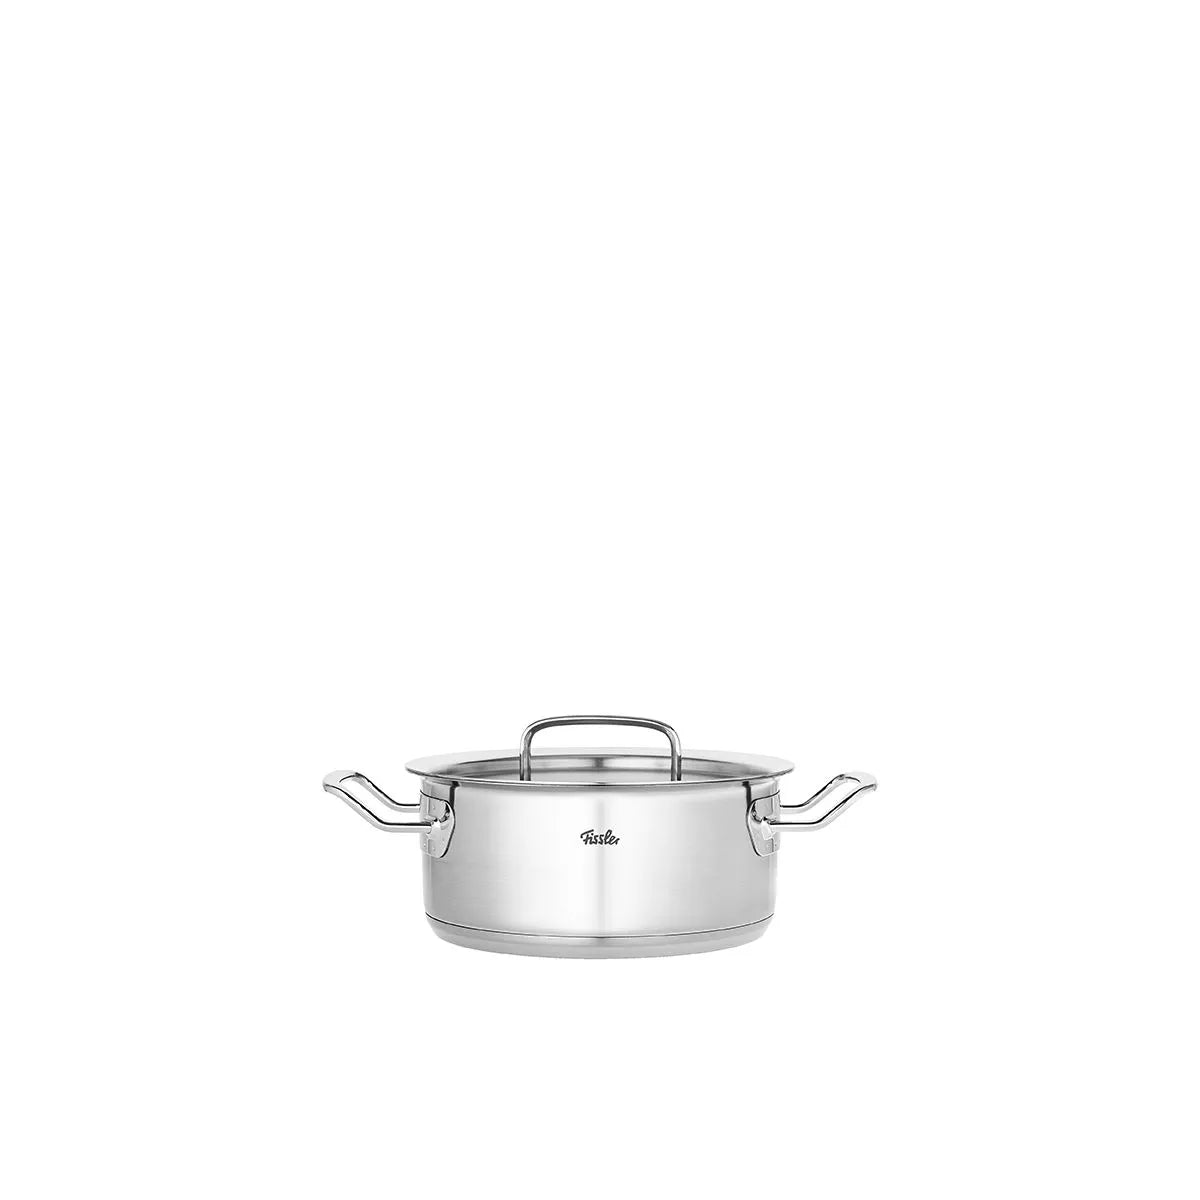 Fissler Original-Profi Collection® Stainless Steel Casserole Pot (2.7 Quart)